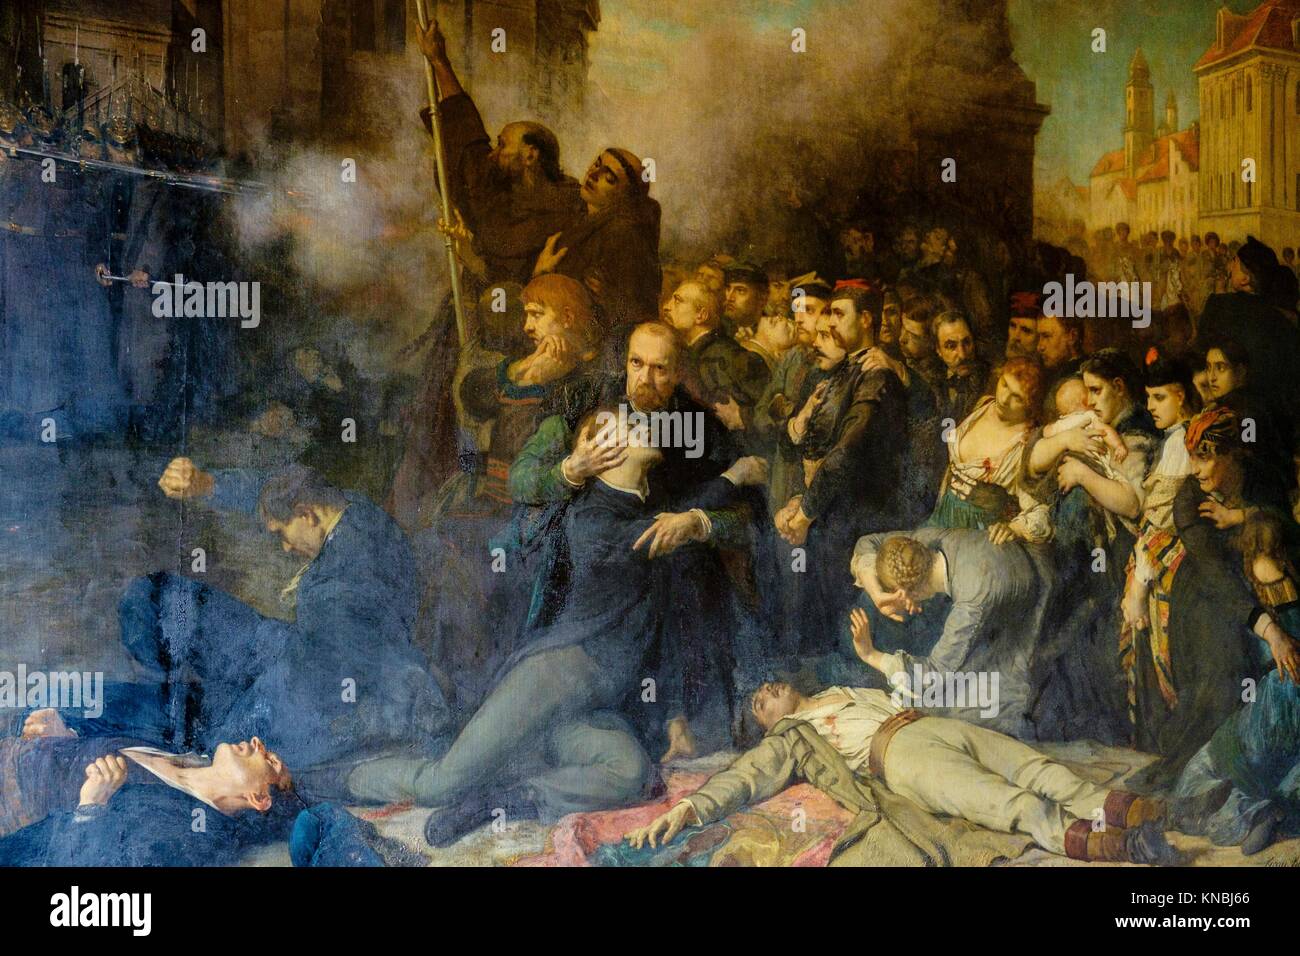 'Massacre of April 8, 1861, in Poland', Tony Robert Fleury, Count Branicki ´s castle, Montrésor, Indre-et-Loire department. France Stock Photo